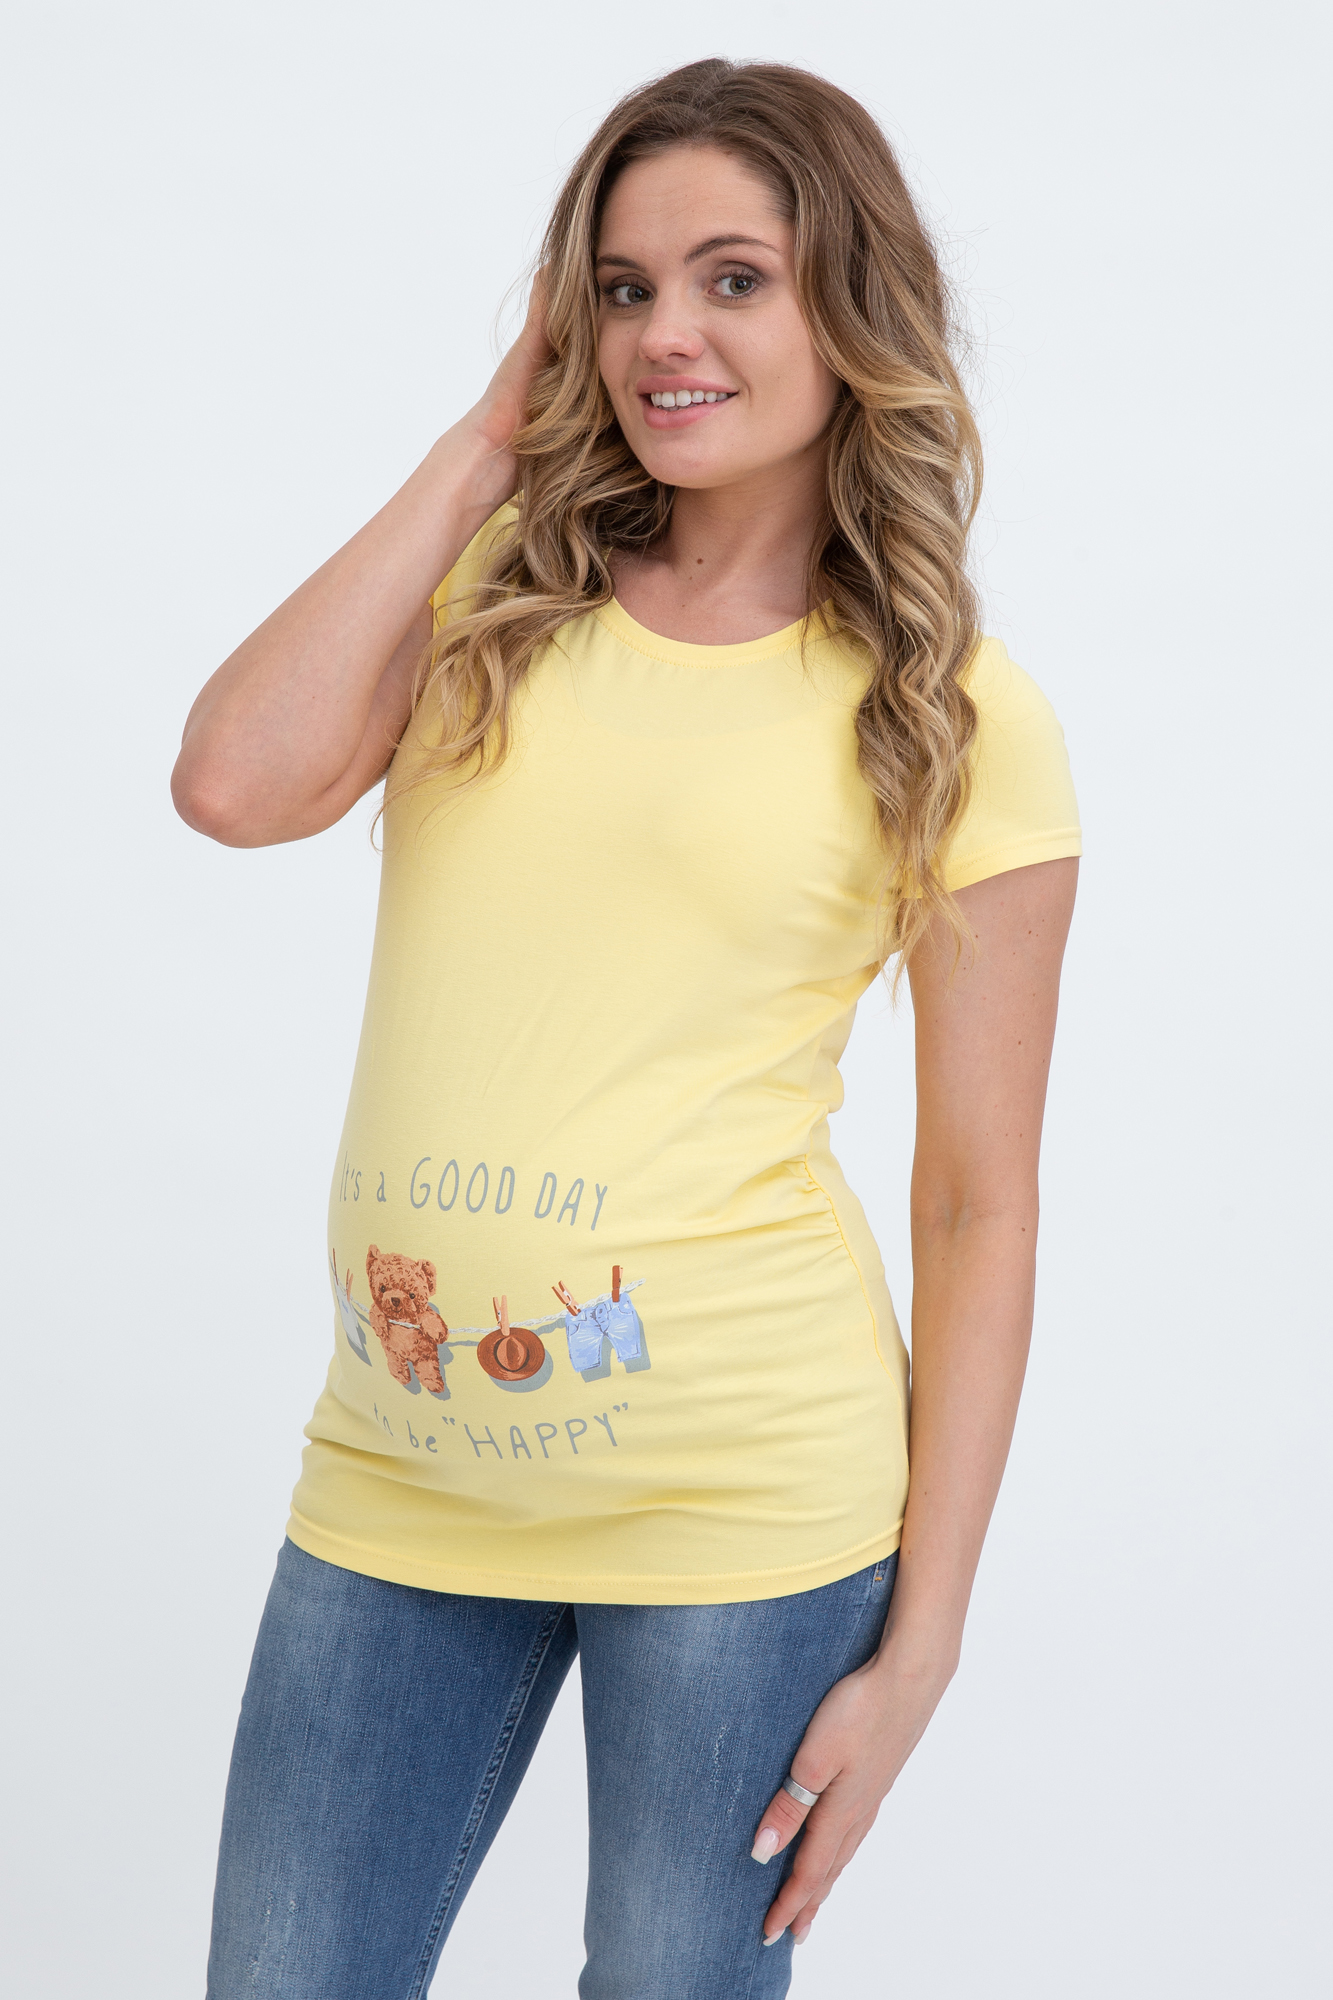 Футболка для беременных женская Magica bellezza МВ7001 желтая 42 RU